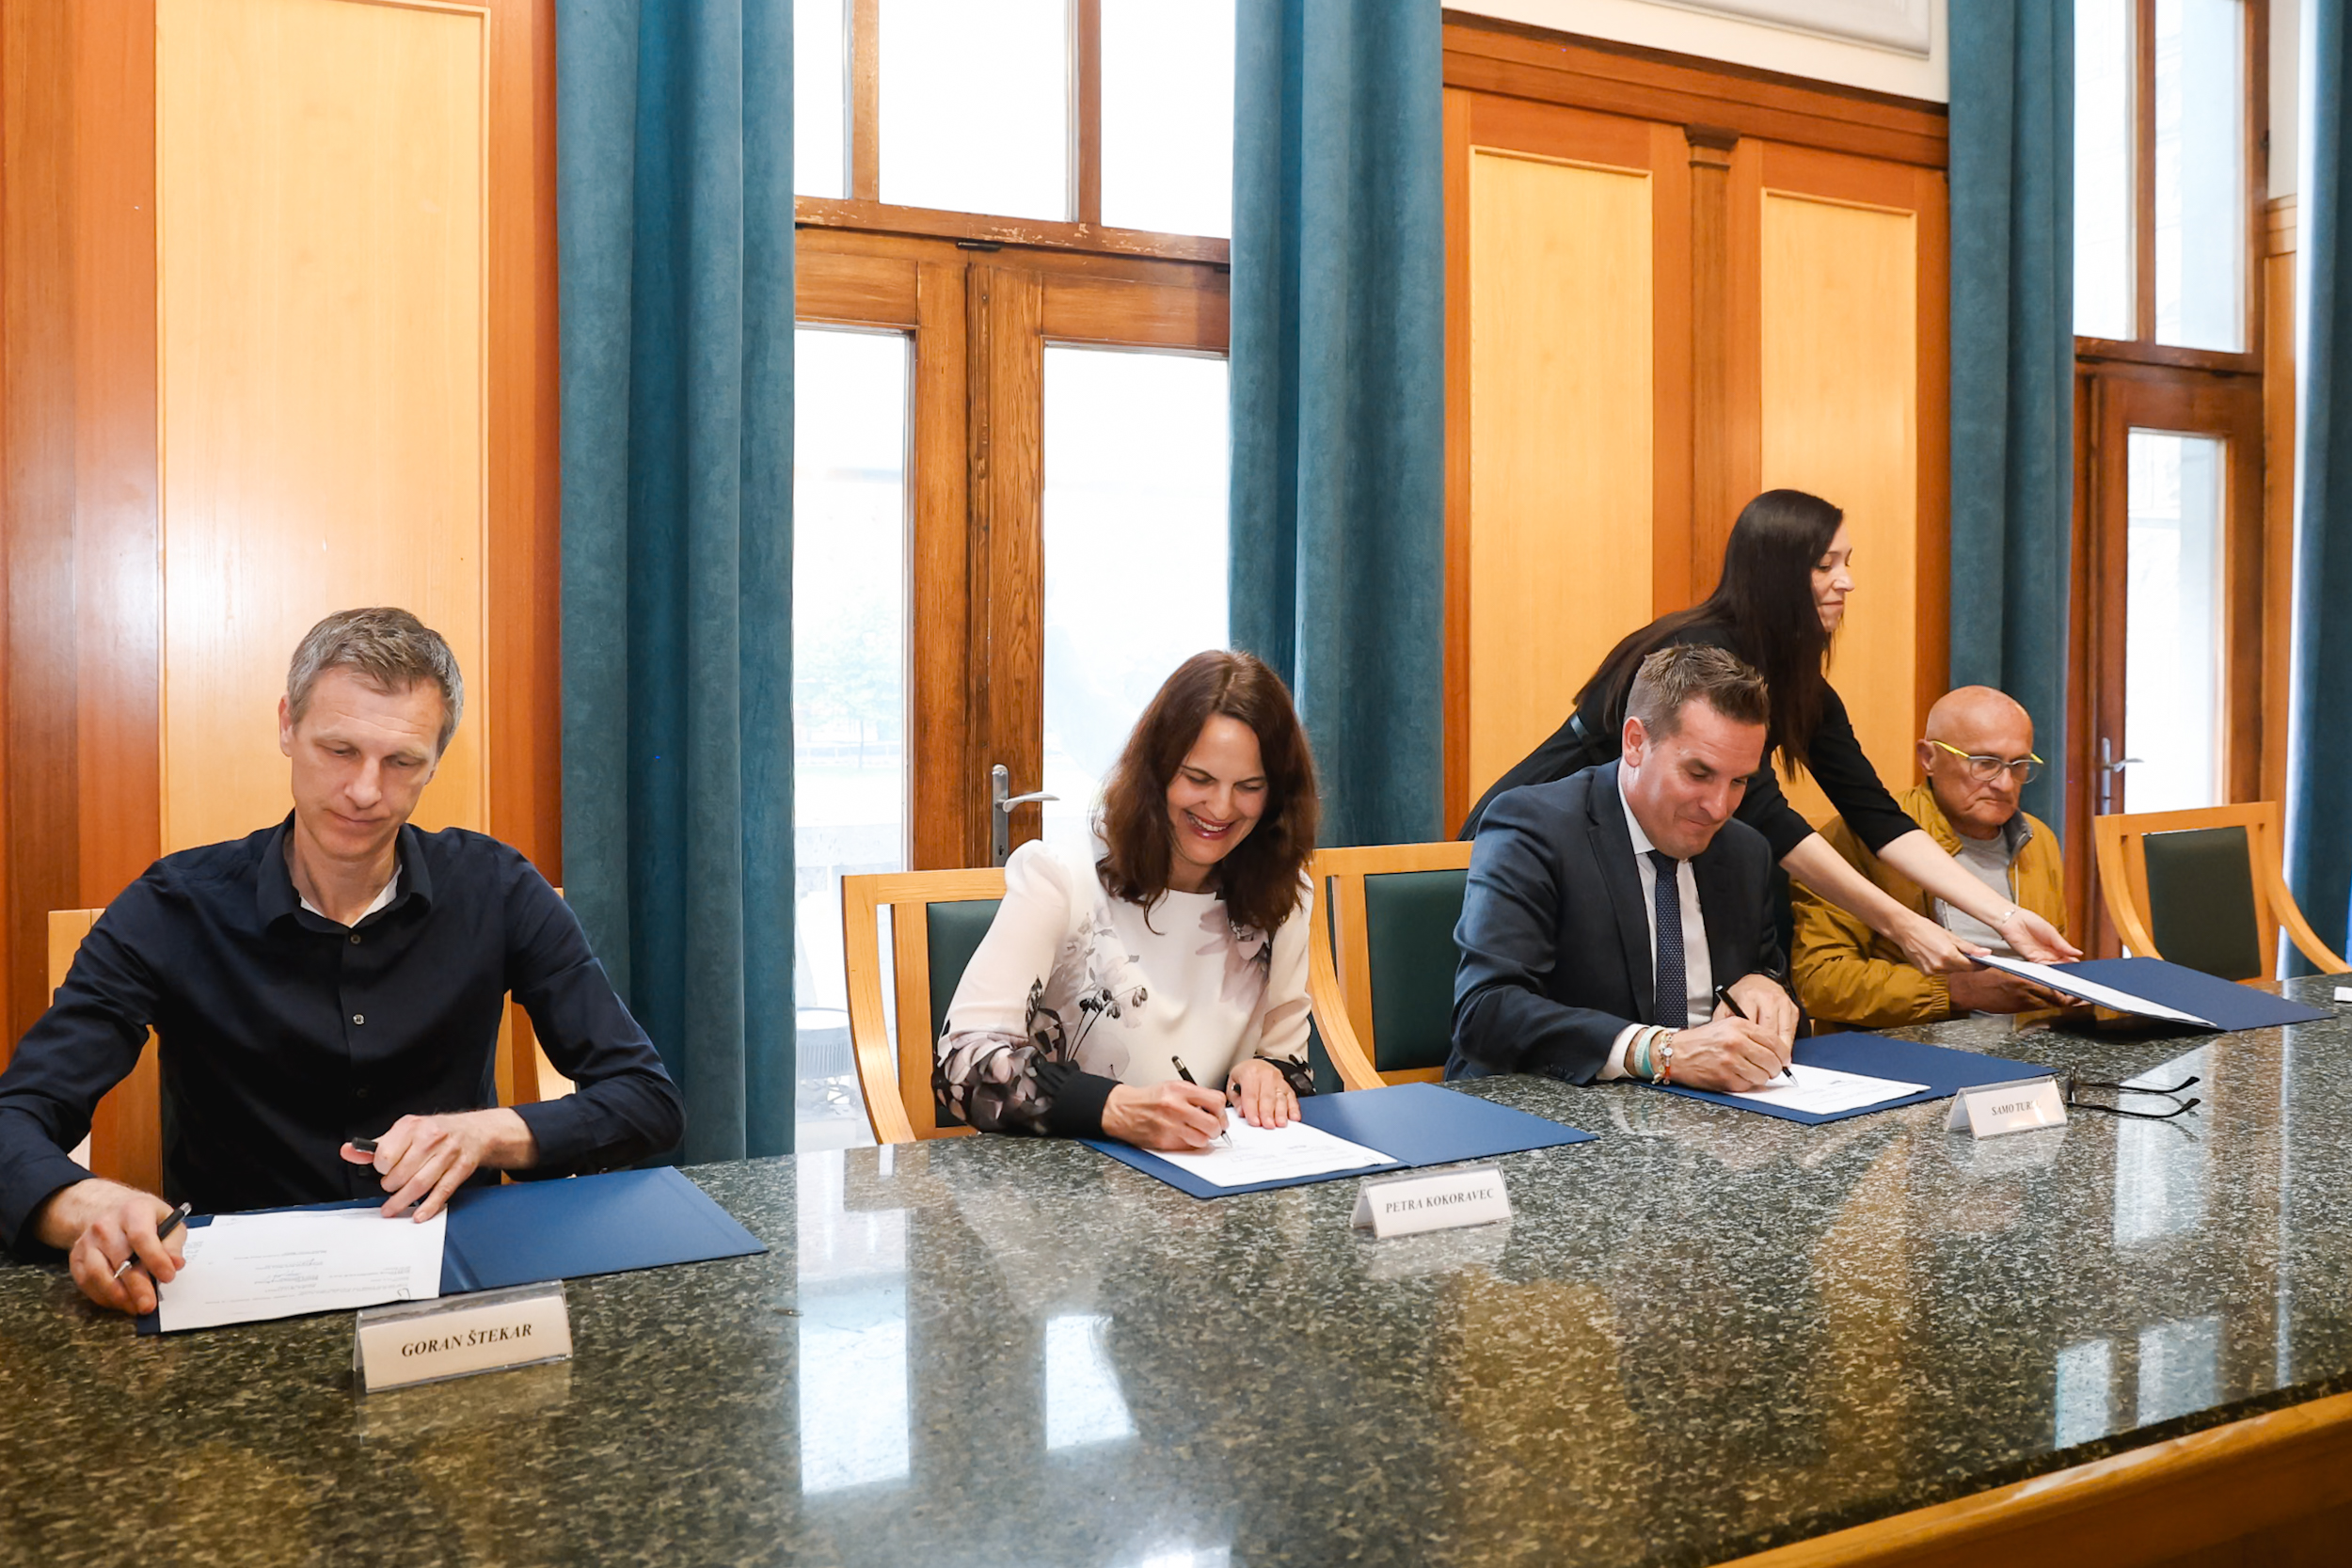 Z leve proti desni. Goran Štekar, Petra Kokoravec, Samo Turel, Miran Mihalič podpisujejo pogodbo. Osebe na sliki podpisujejo pogodbo z nasmeškom na obrazu.